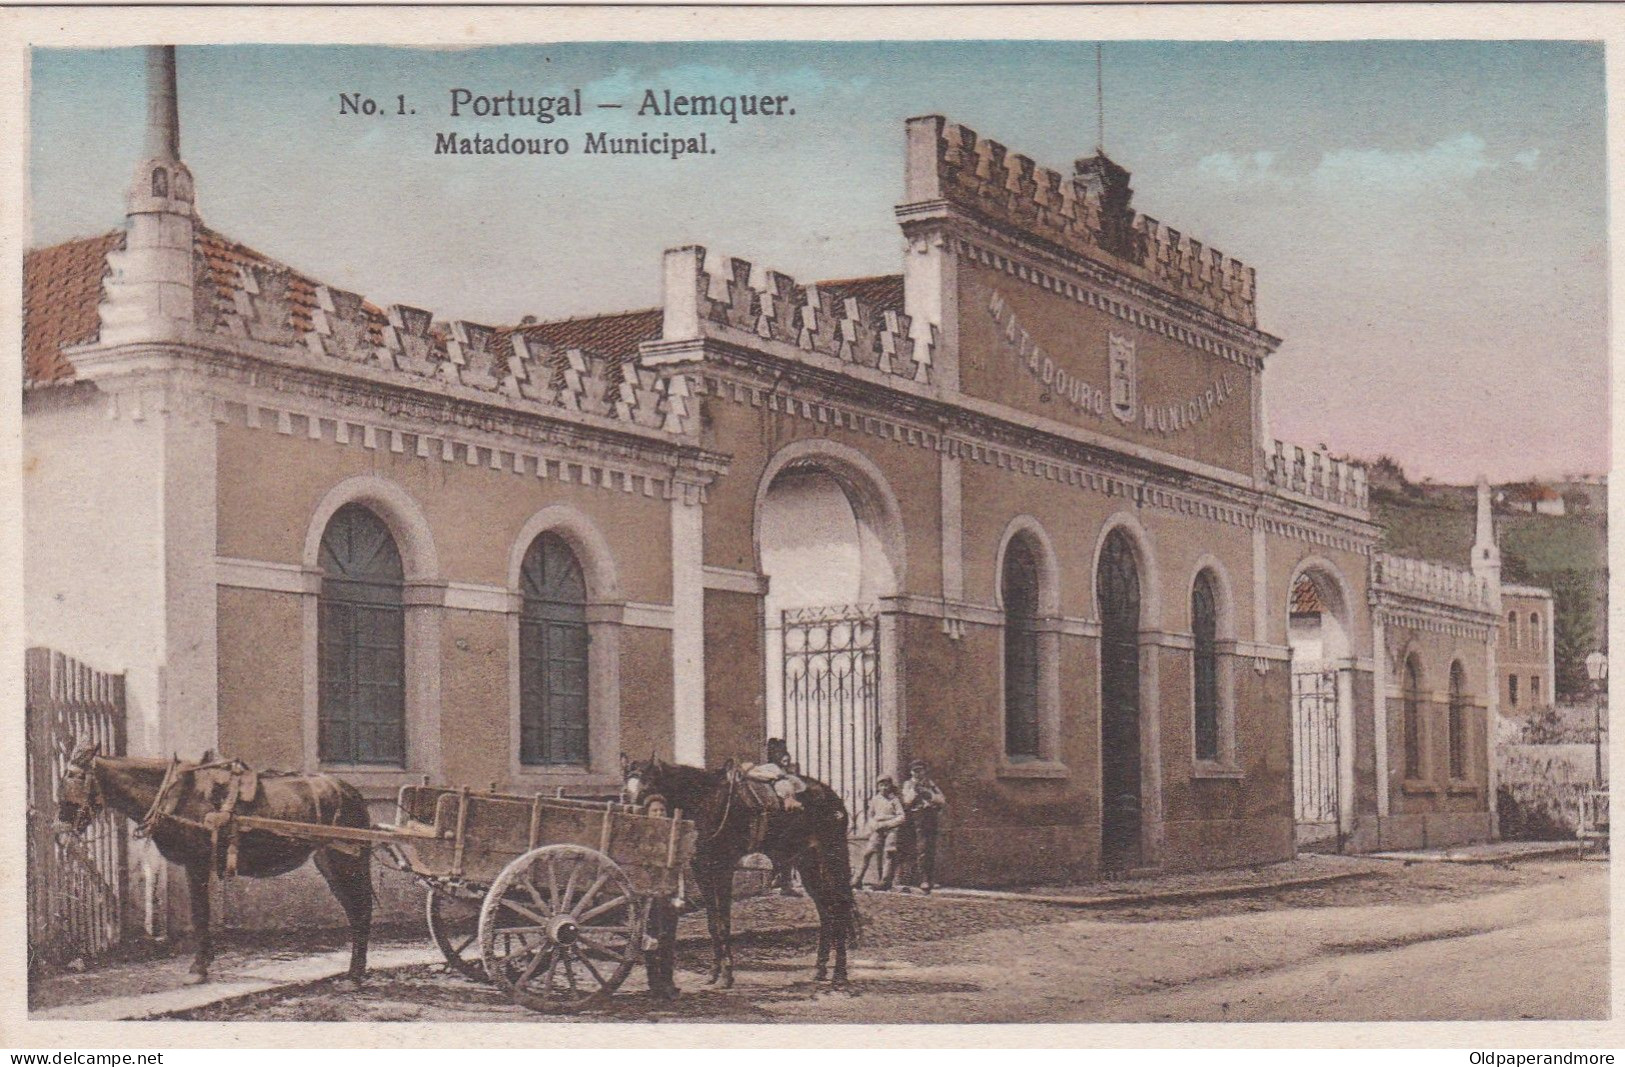 POSTCARD PORTUGAL - ALENQUER - MATADOURO MUNICIPAL - Lisboa